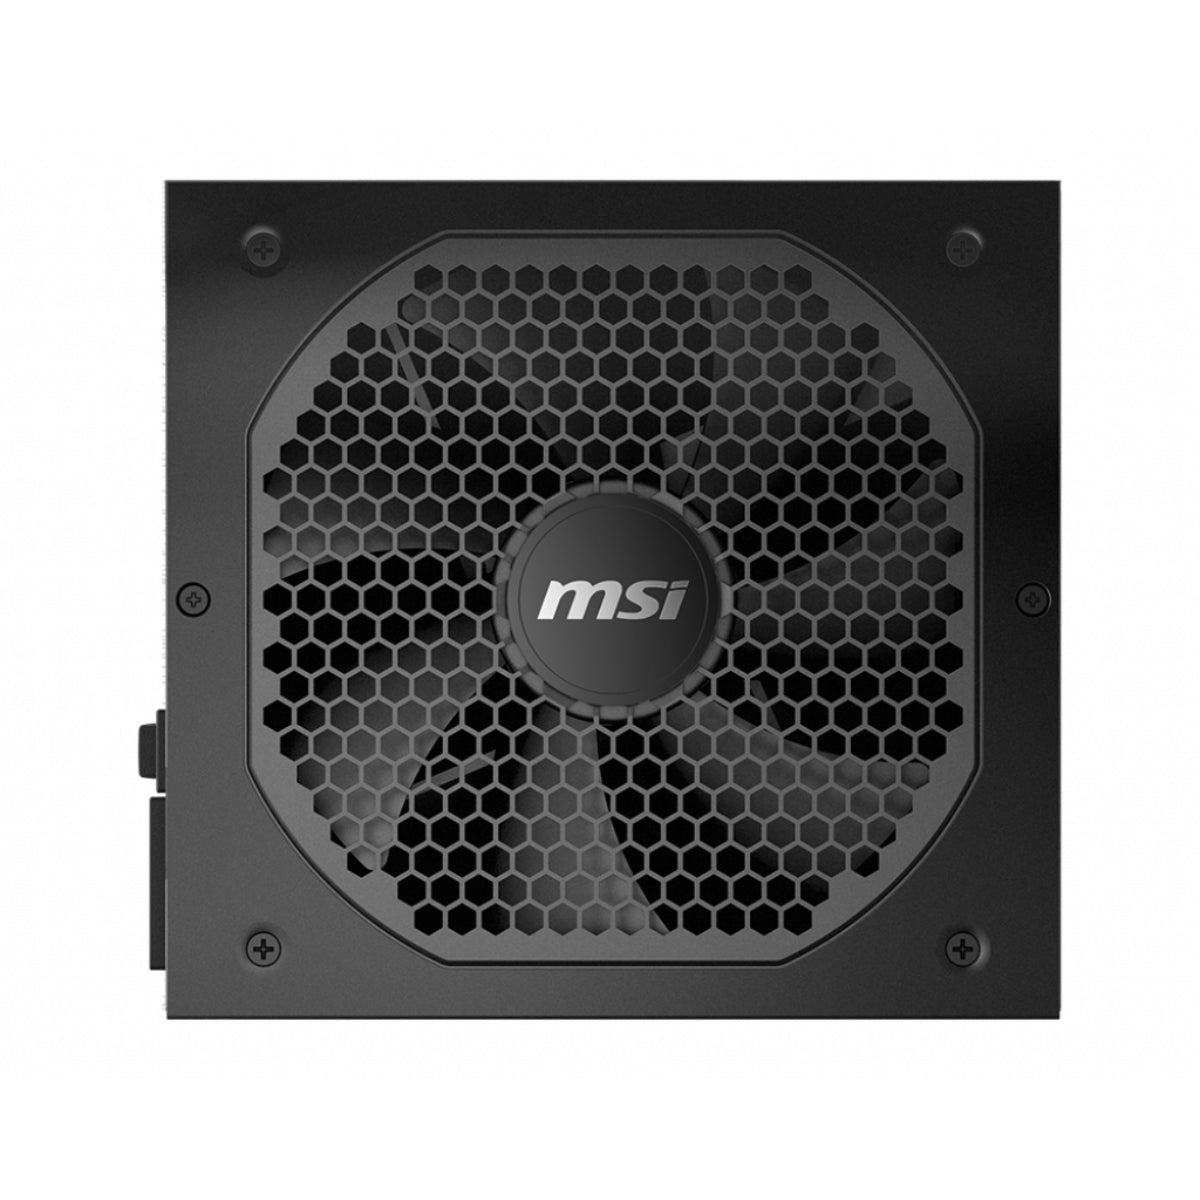 MSI MPG A650GF 650W Gold ATX Fully Modular Power Supply - Black - مزود طاقة - Store 974 | ستور ٩٧٤